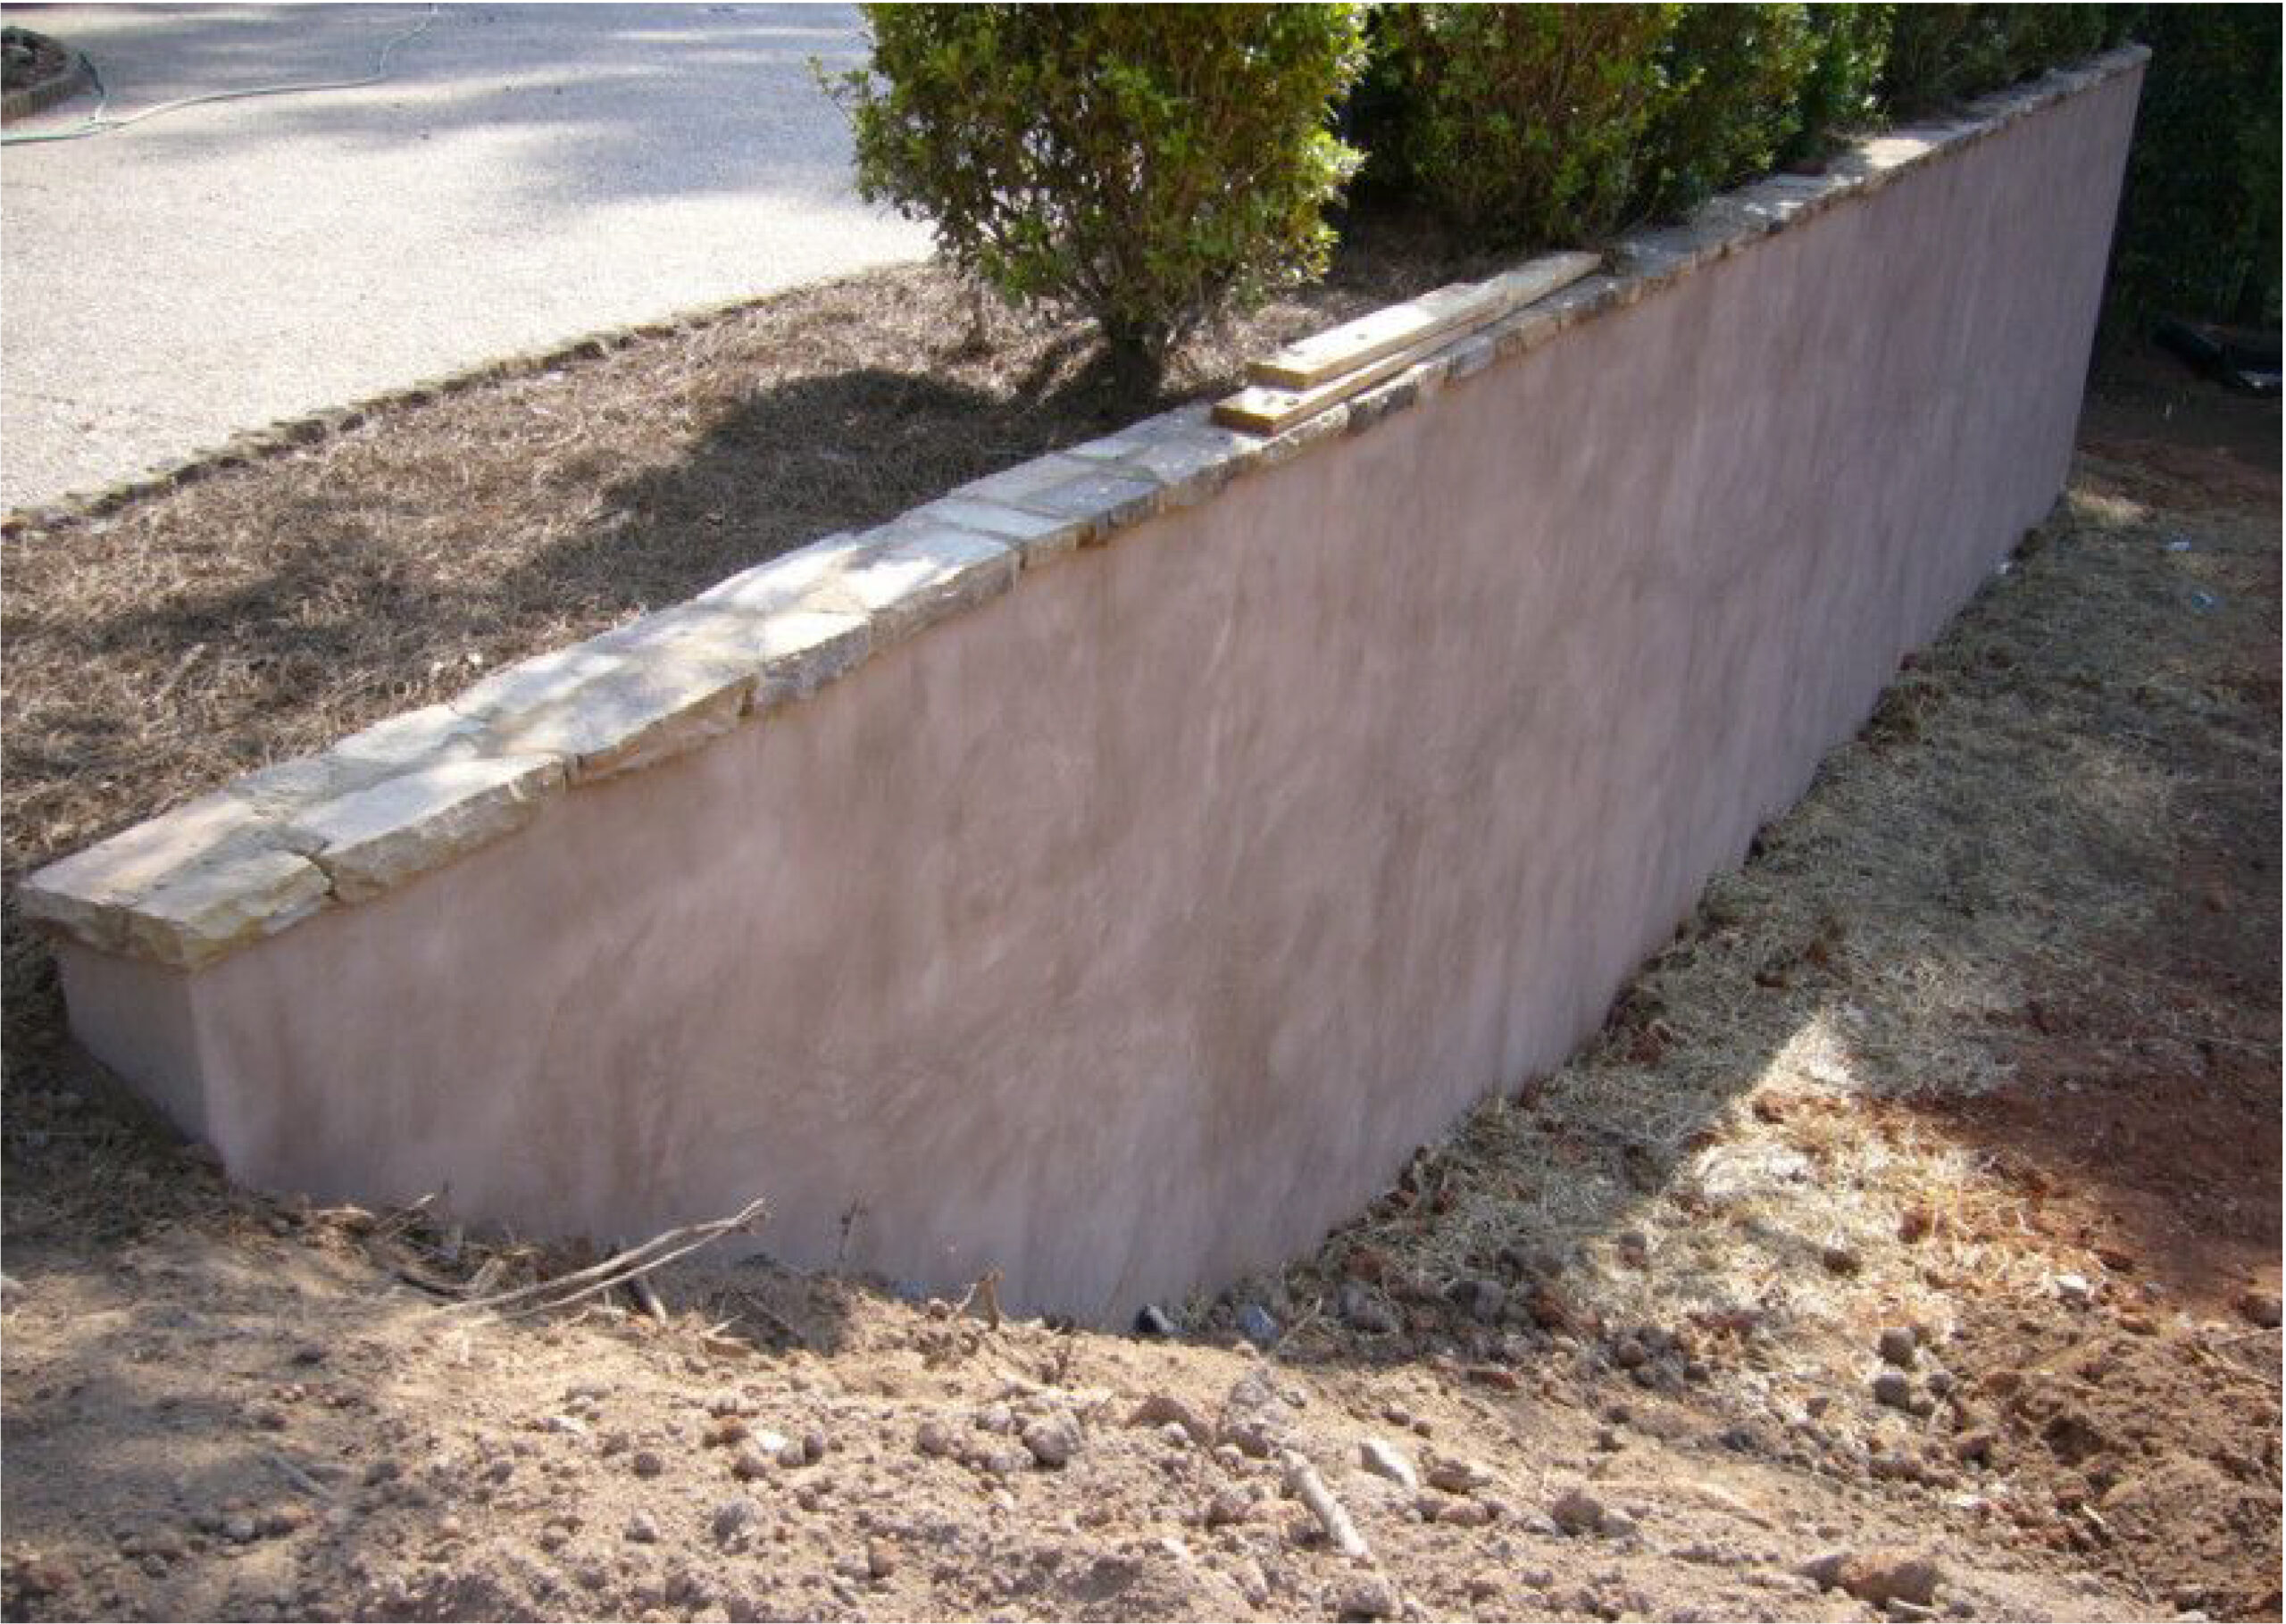 Cement Concrete & Concrete Slab » Stamped Concrete Decorative Concrete